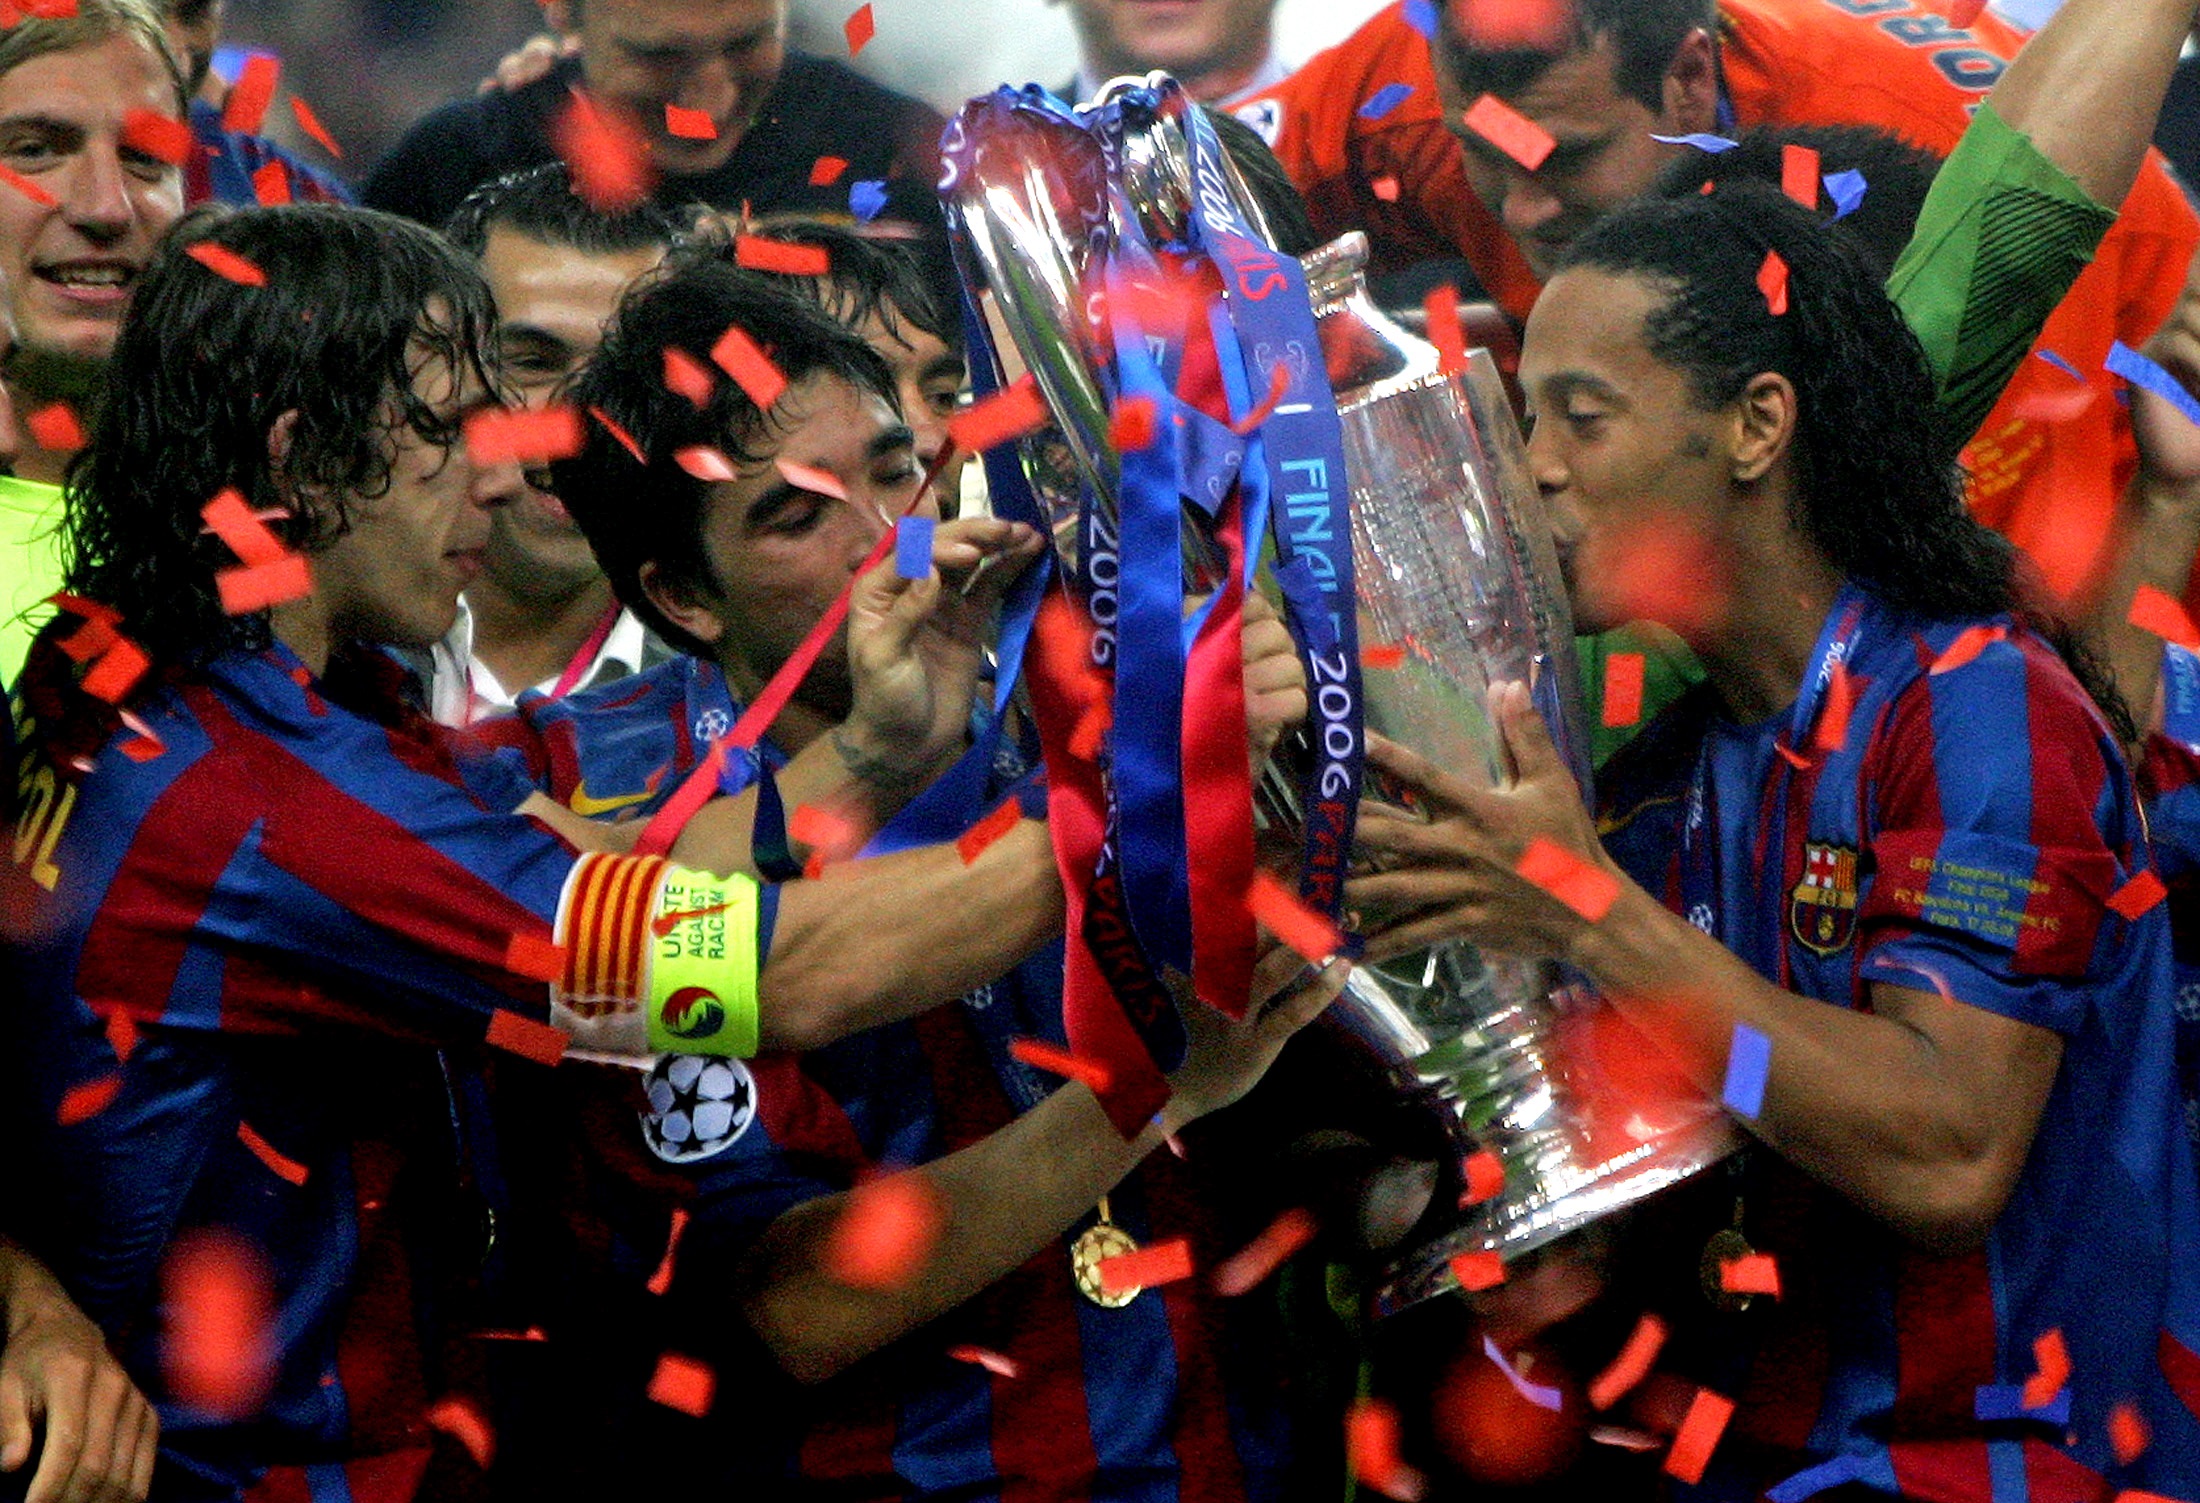 لاعبو النادي الكتالوني ويظهر البرازيلي رونالدينيو ومواطنه ديكو، وقائد الفريق الإسباني كارلوس بويول أثناء احتفالهم بإحراز لقب دوري أبطال أوروبا 2006 على حساب أرسنال في العاصمة الفرنسية باريس (رويترز)